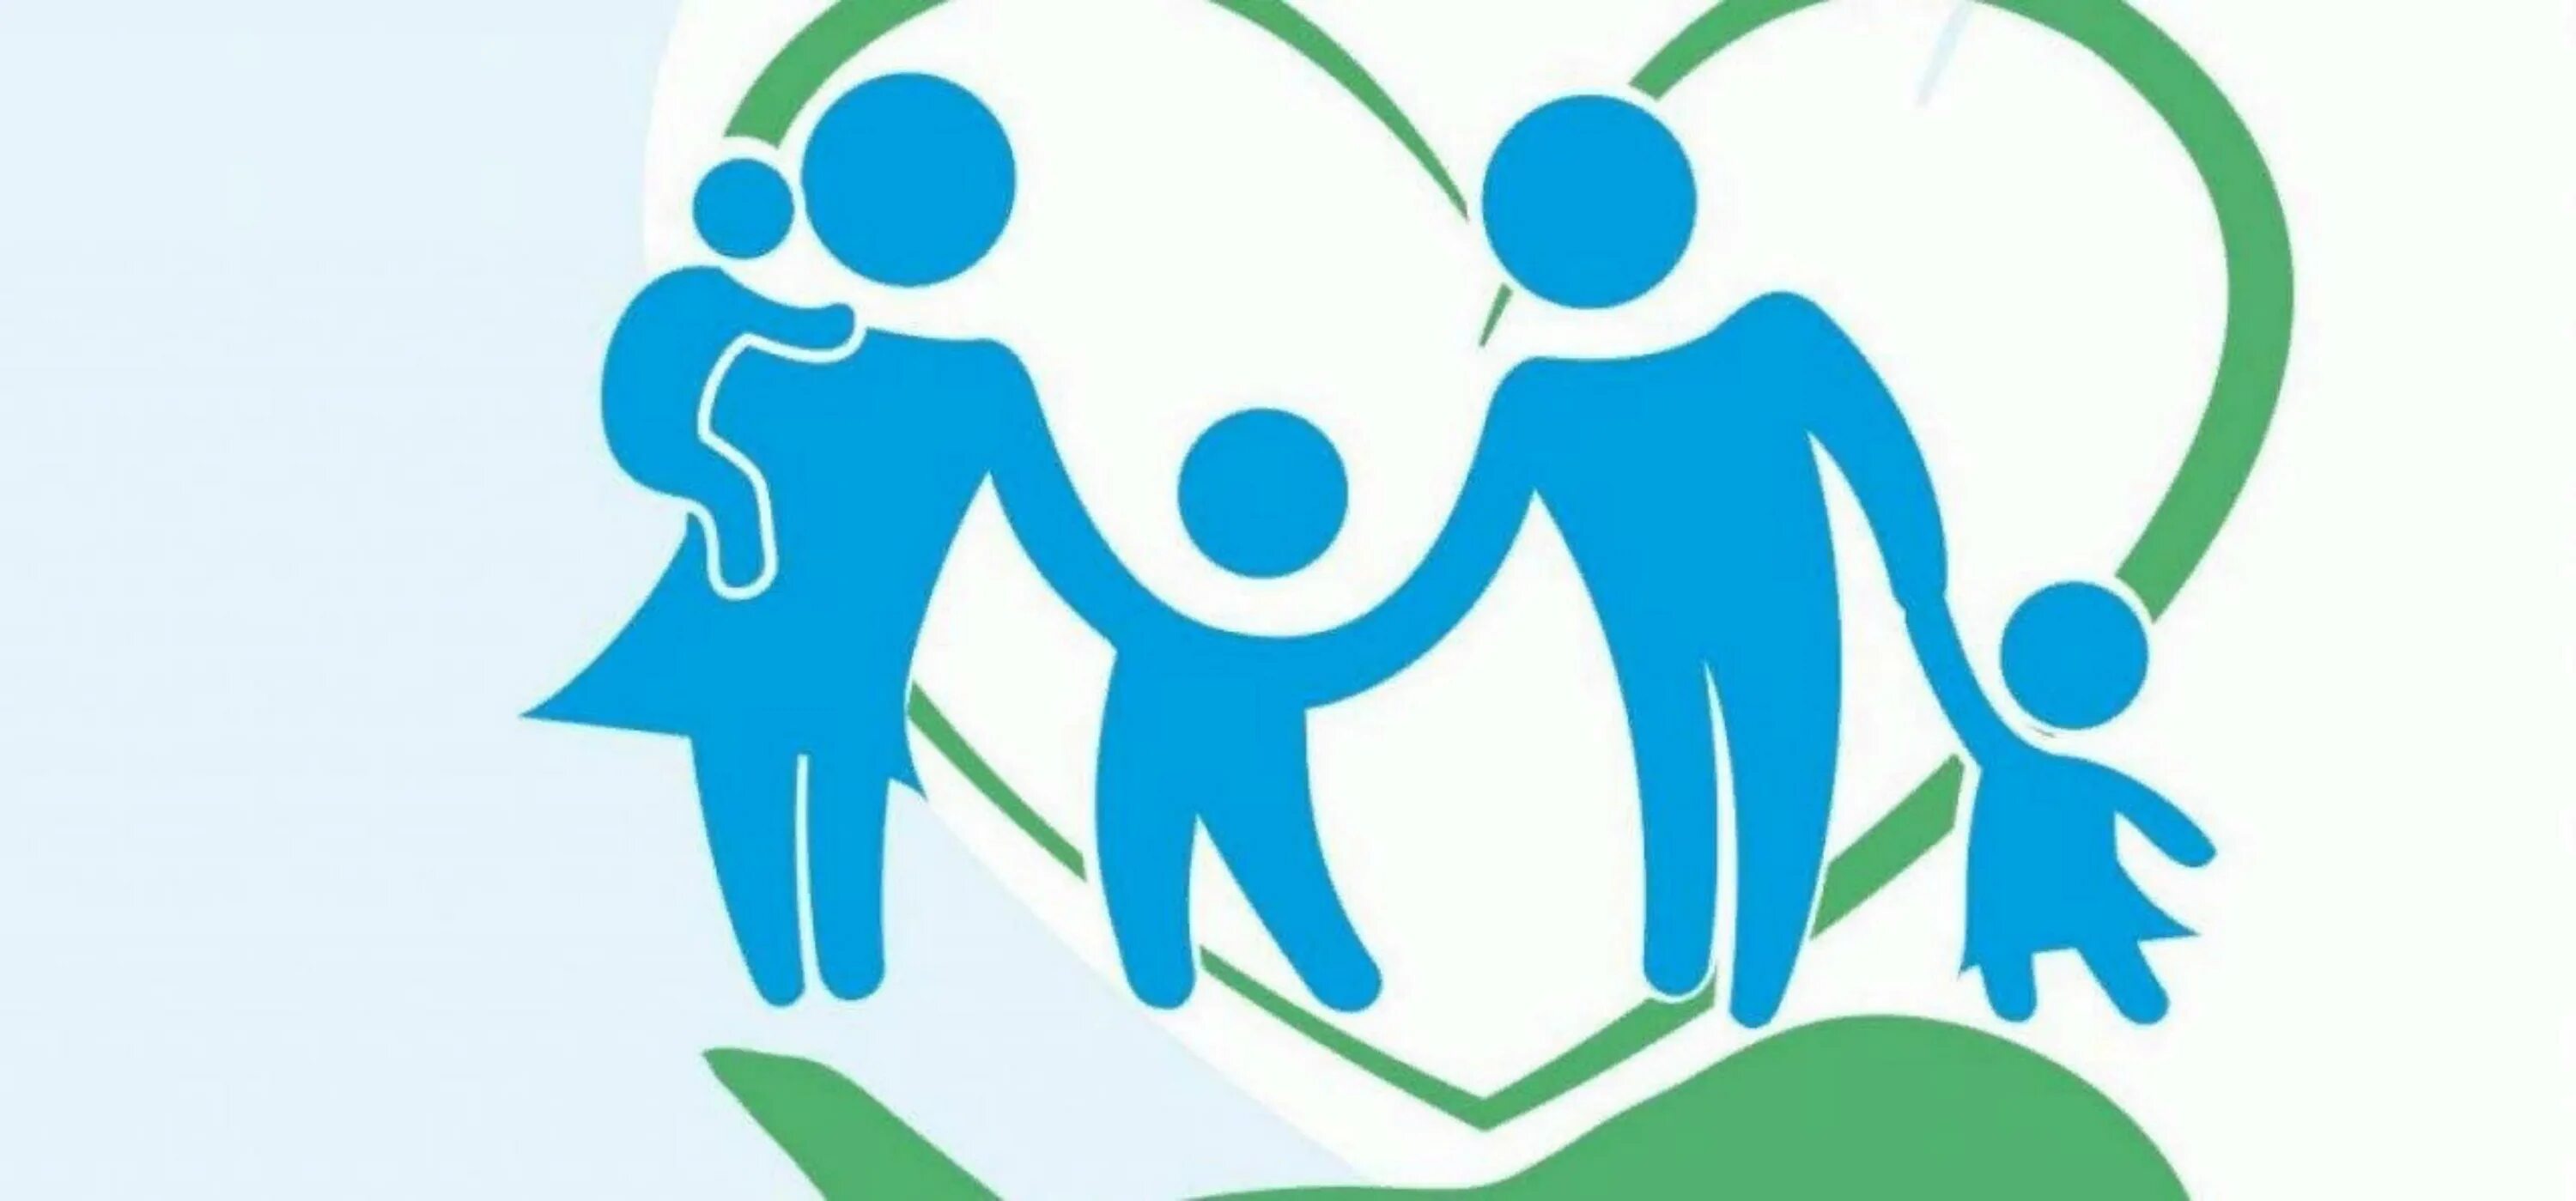 Семья логотип. Эмблема социальной работы. Социальная поддержка семей. Социальная защита семей с детьми. Социальная защита населения обучение